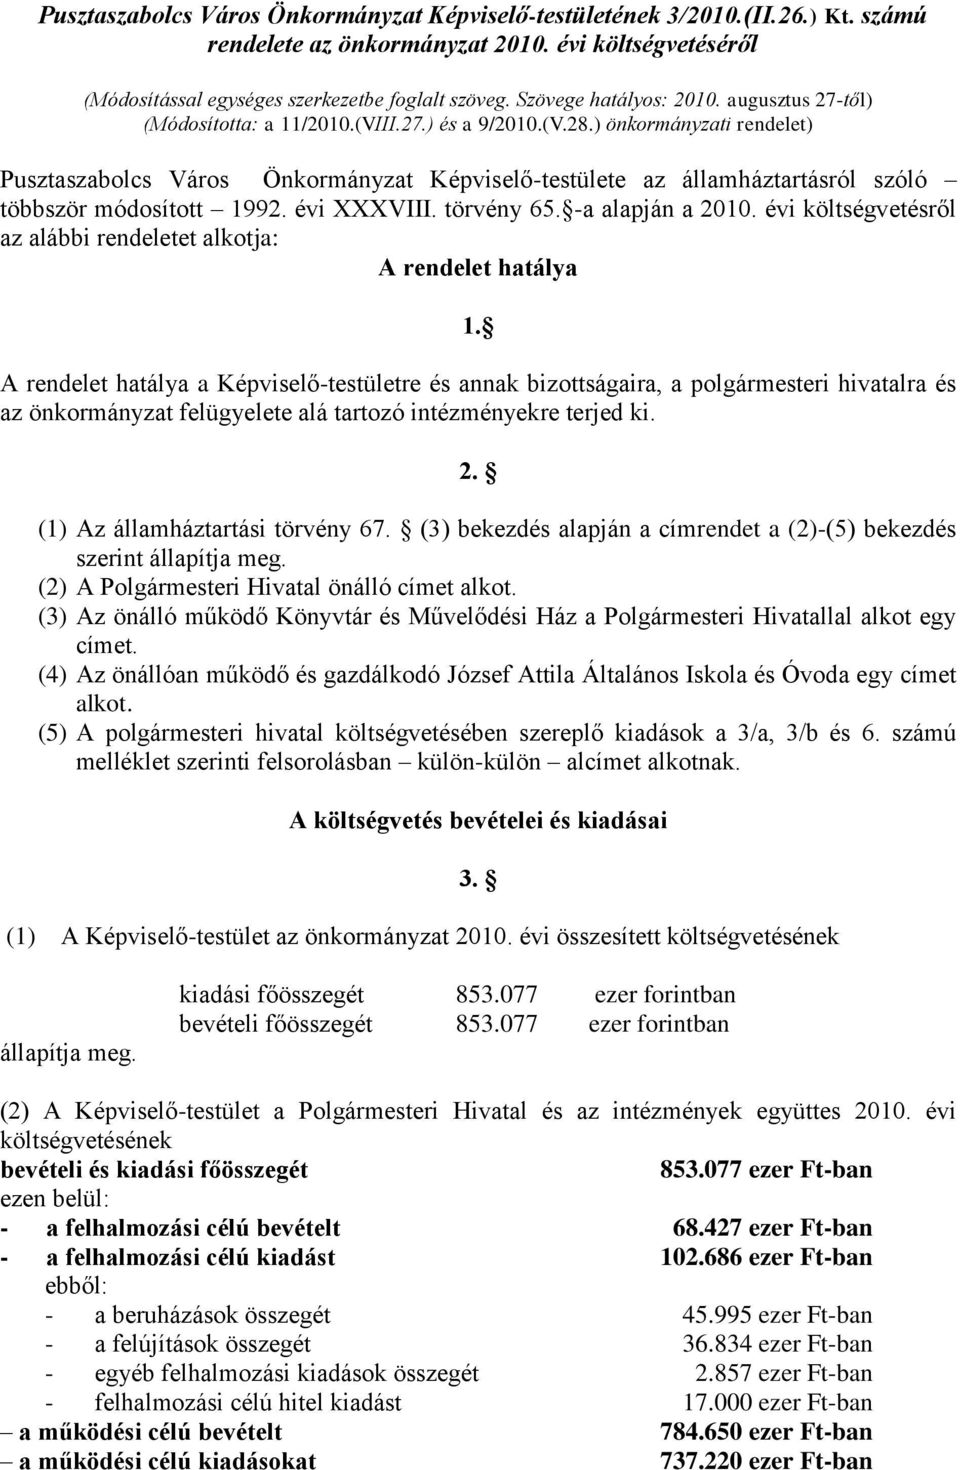 ) önkormányzati rendelet) Pusztaszabolcs Város Önkormányzat Képviselő-testülete az államháztartásról szóló többször módosított 1992. évi XXXVIII. törvény 65. -a alapján a 2010.